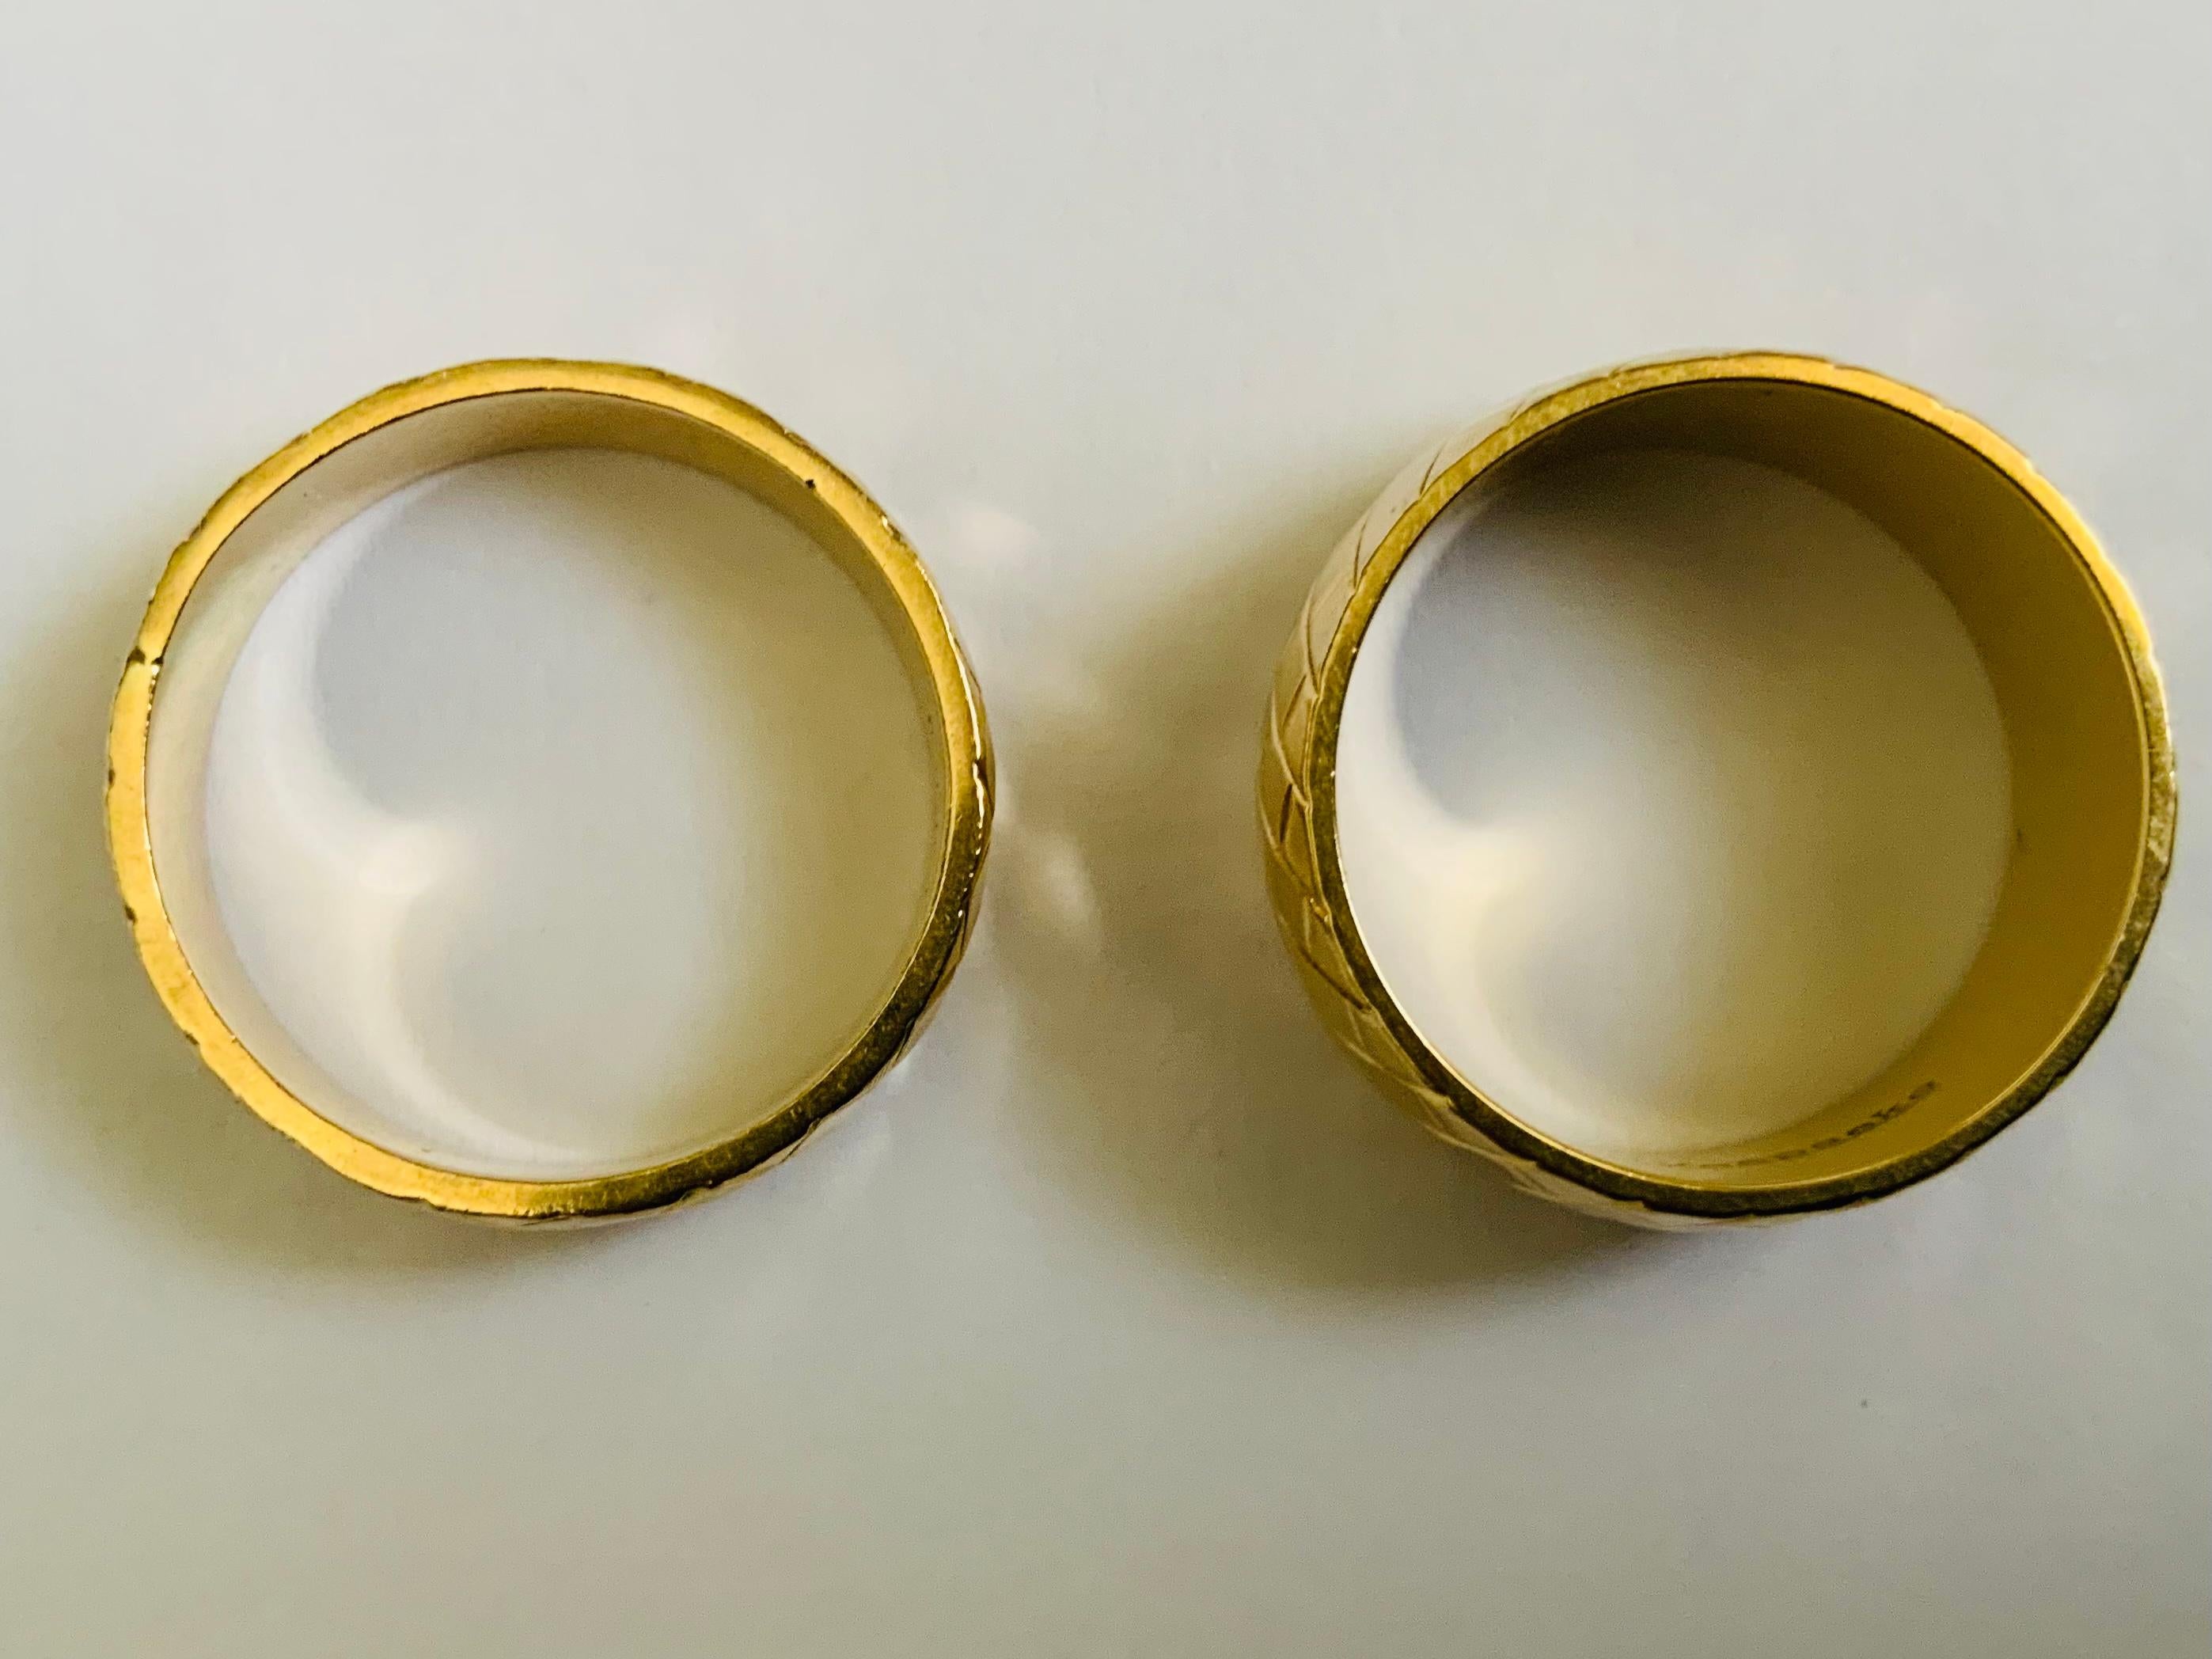 Il s'agit d'un ensemble d'alliances en or jaune 14K. Il représente deux anneaux à bandes nervurées, l'un étant plus large ( 8,2 mm ) que l'autre ( 5,76 mm ). Les bagues sont poinçonnées 14K Keepsake. Leurs poids sont de 6,7 et 4,8 grammes et leurs